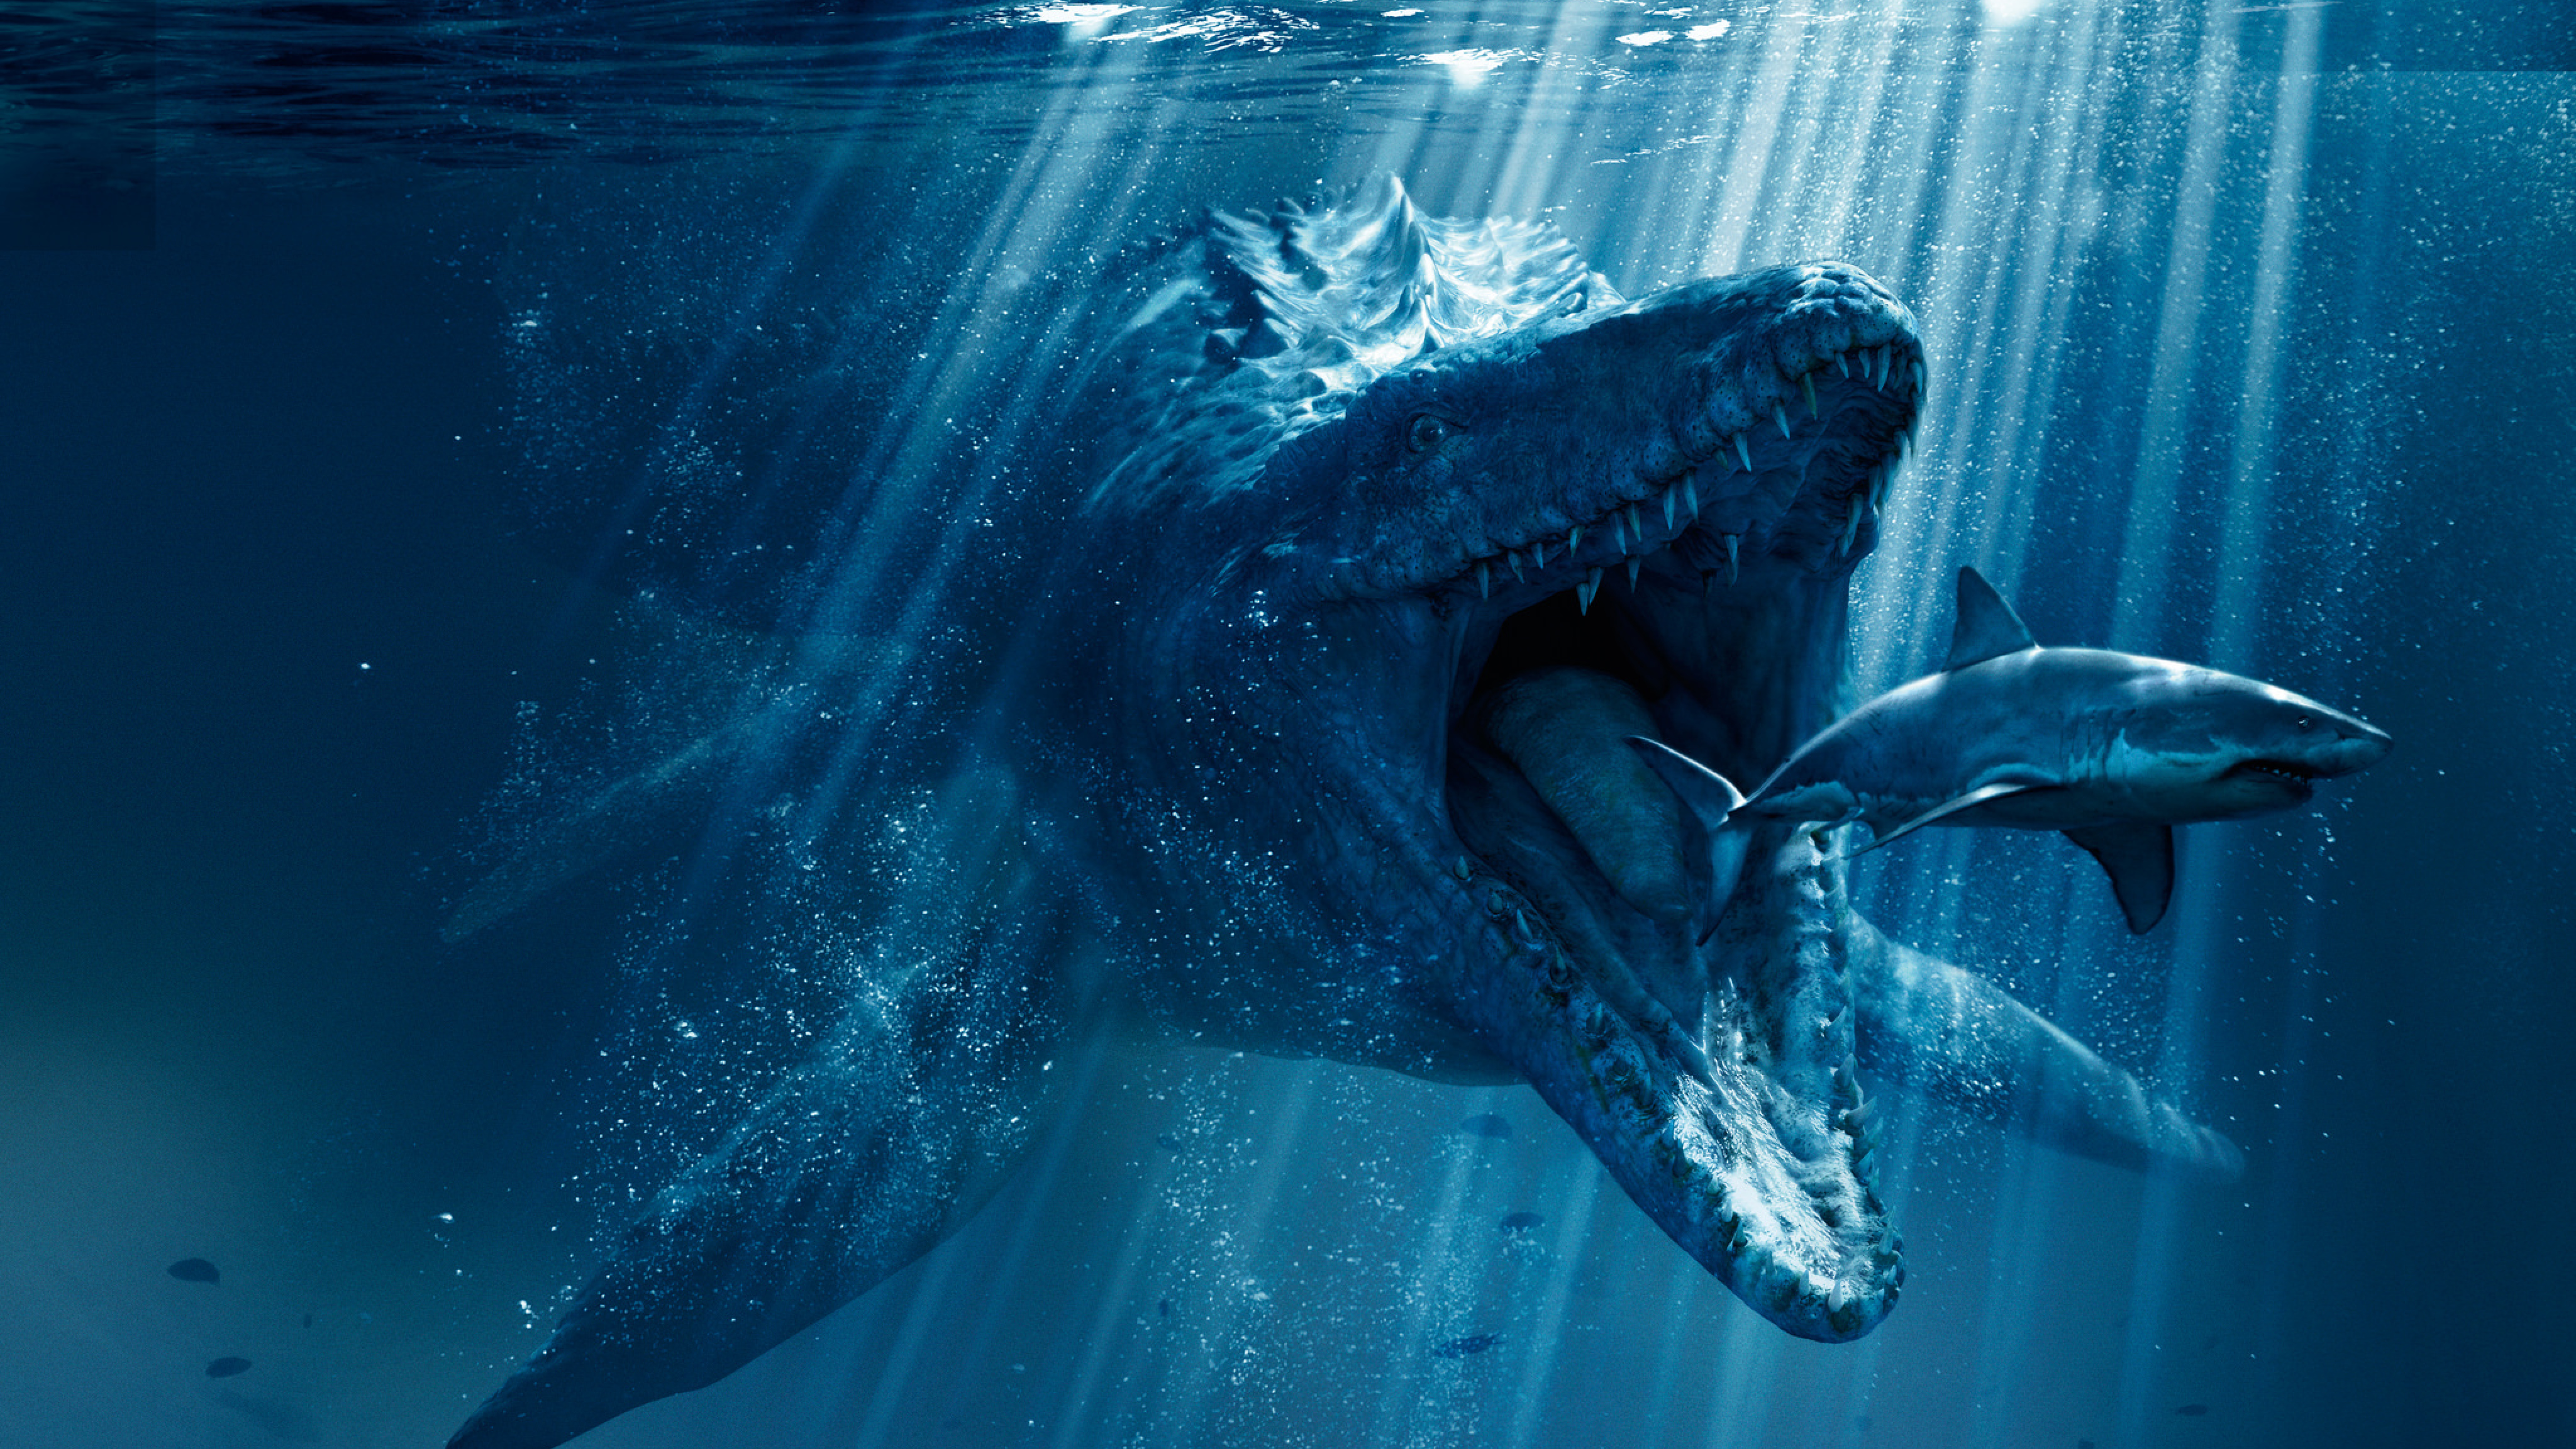 Mosasaurus Shark Snack Poster From Jurassic World